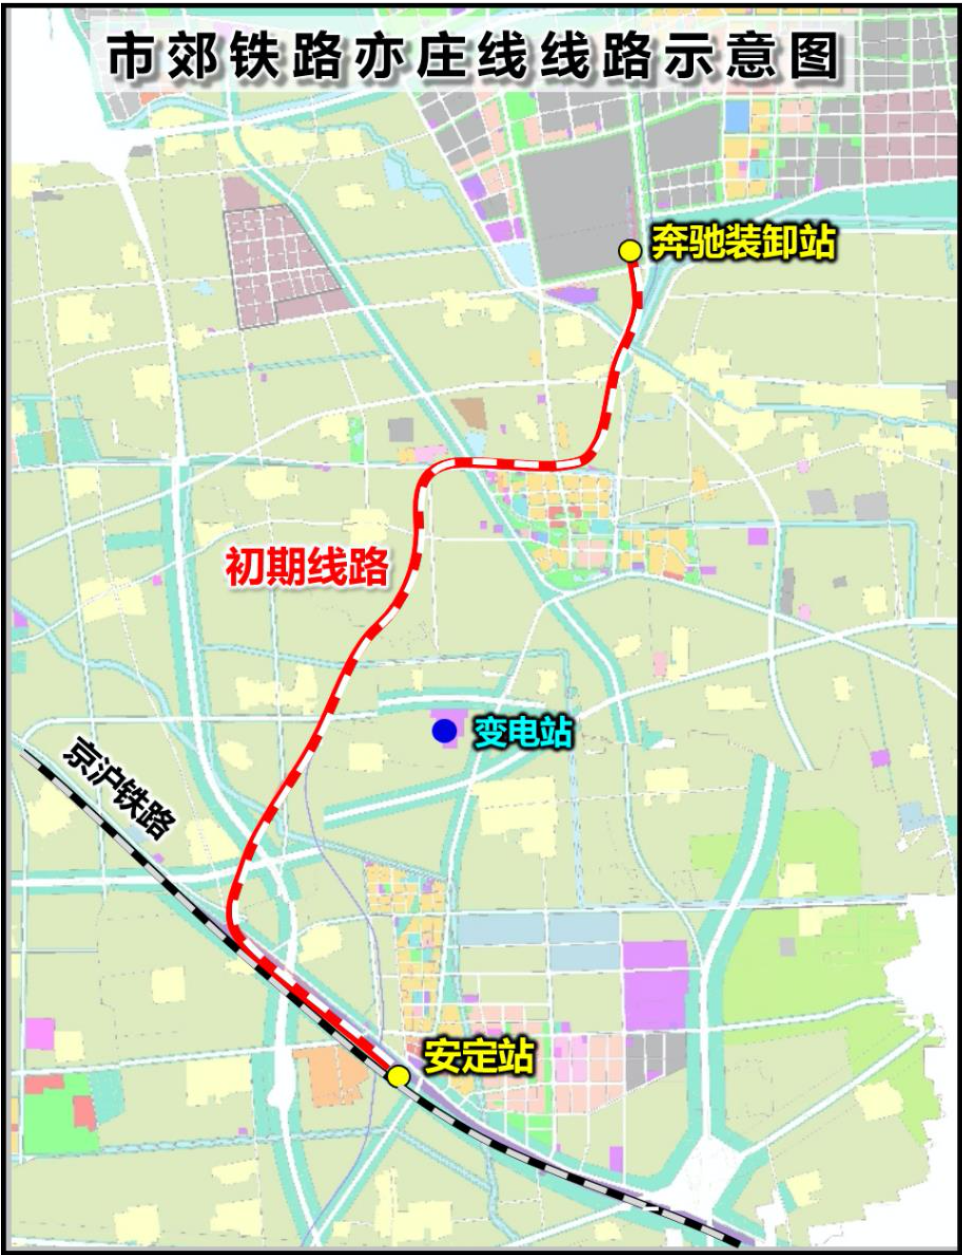 北京城郊铁路亦庄线工程预计年底开工